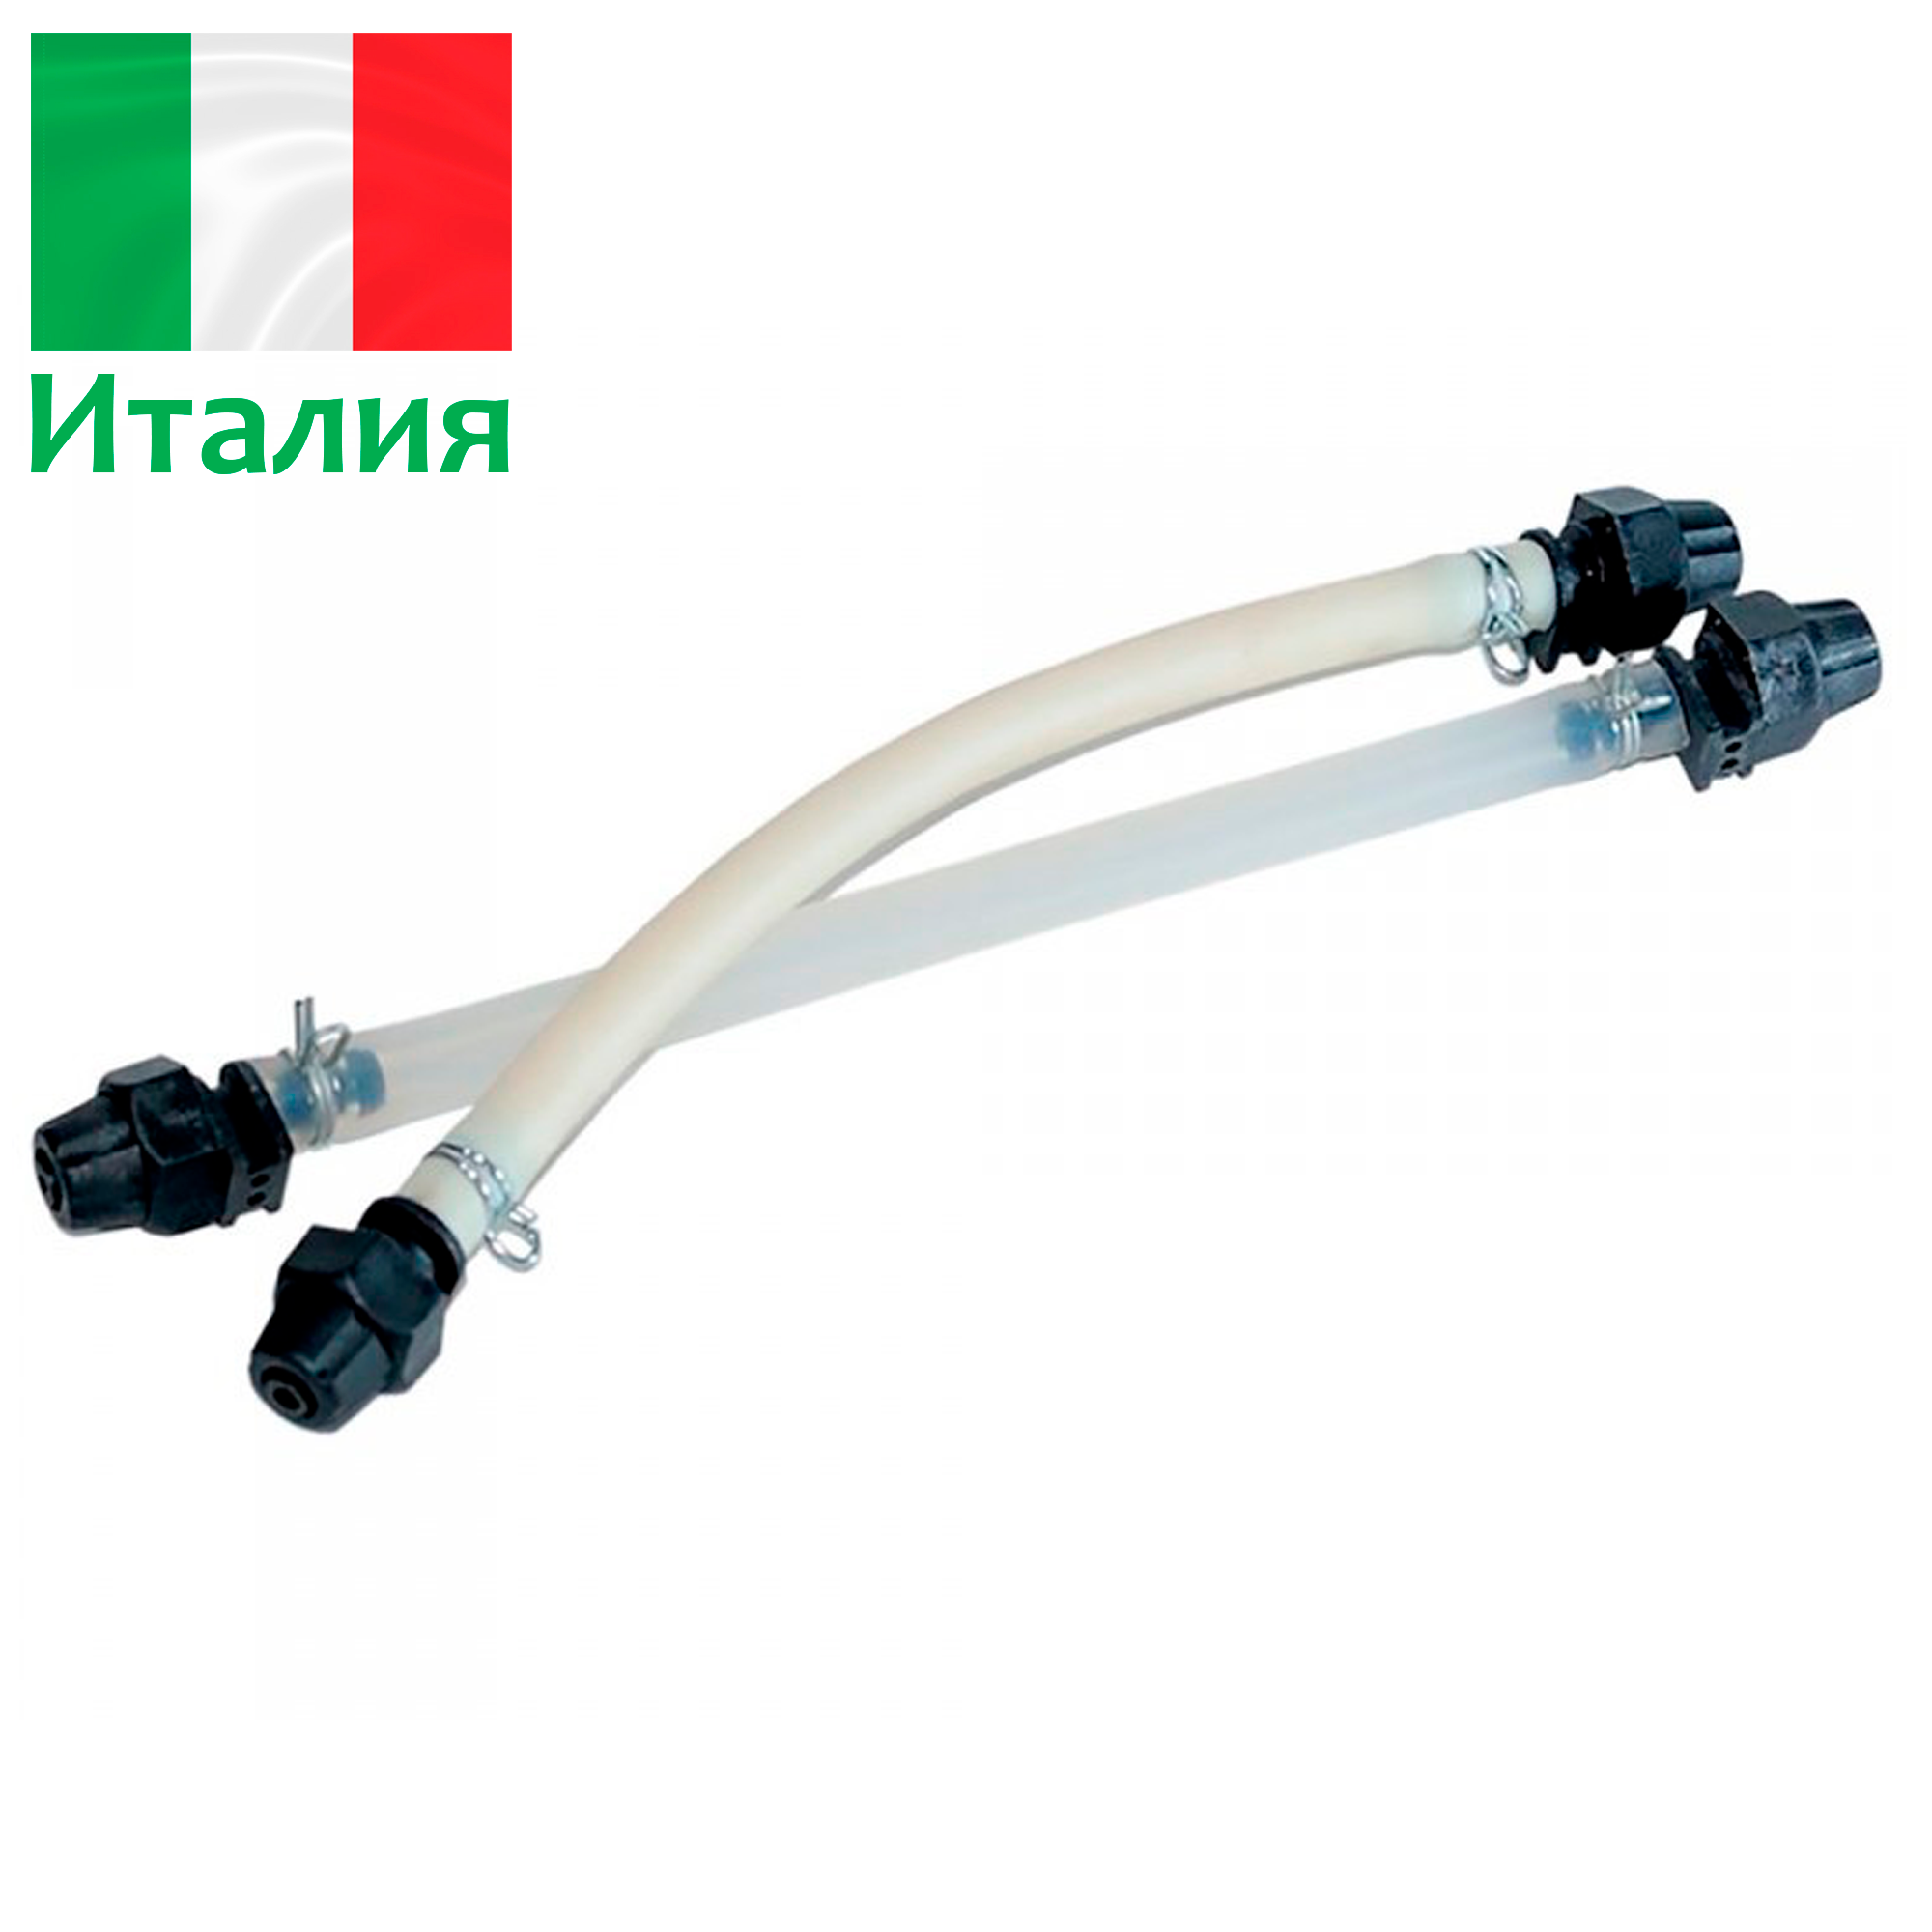 Шланг (трубка) для перистальтических дозирующих насосов eMyPool - 1.5 л/ч - d 4.8 x 8.0 мм - RTU0005101, Etatron, Италия